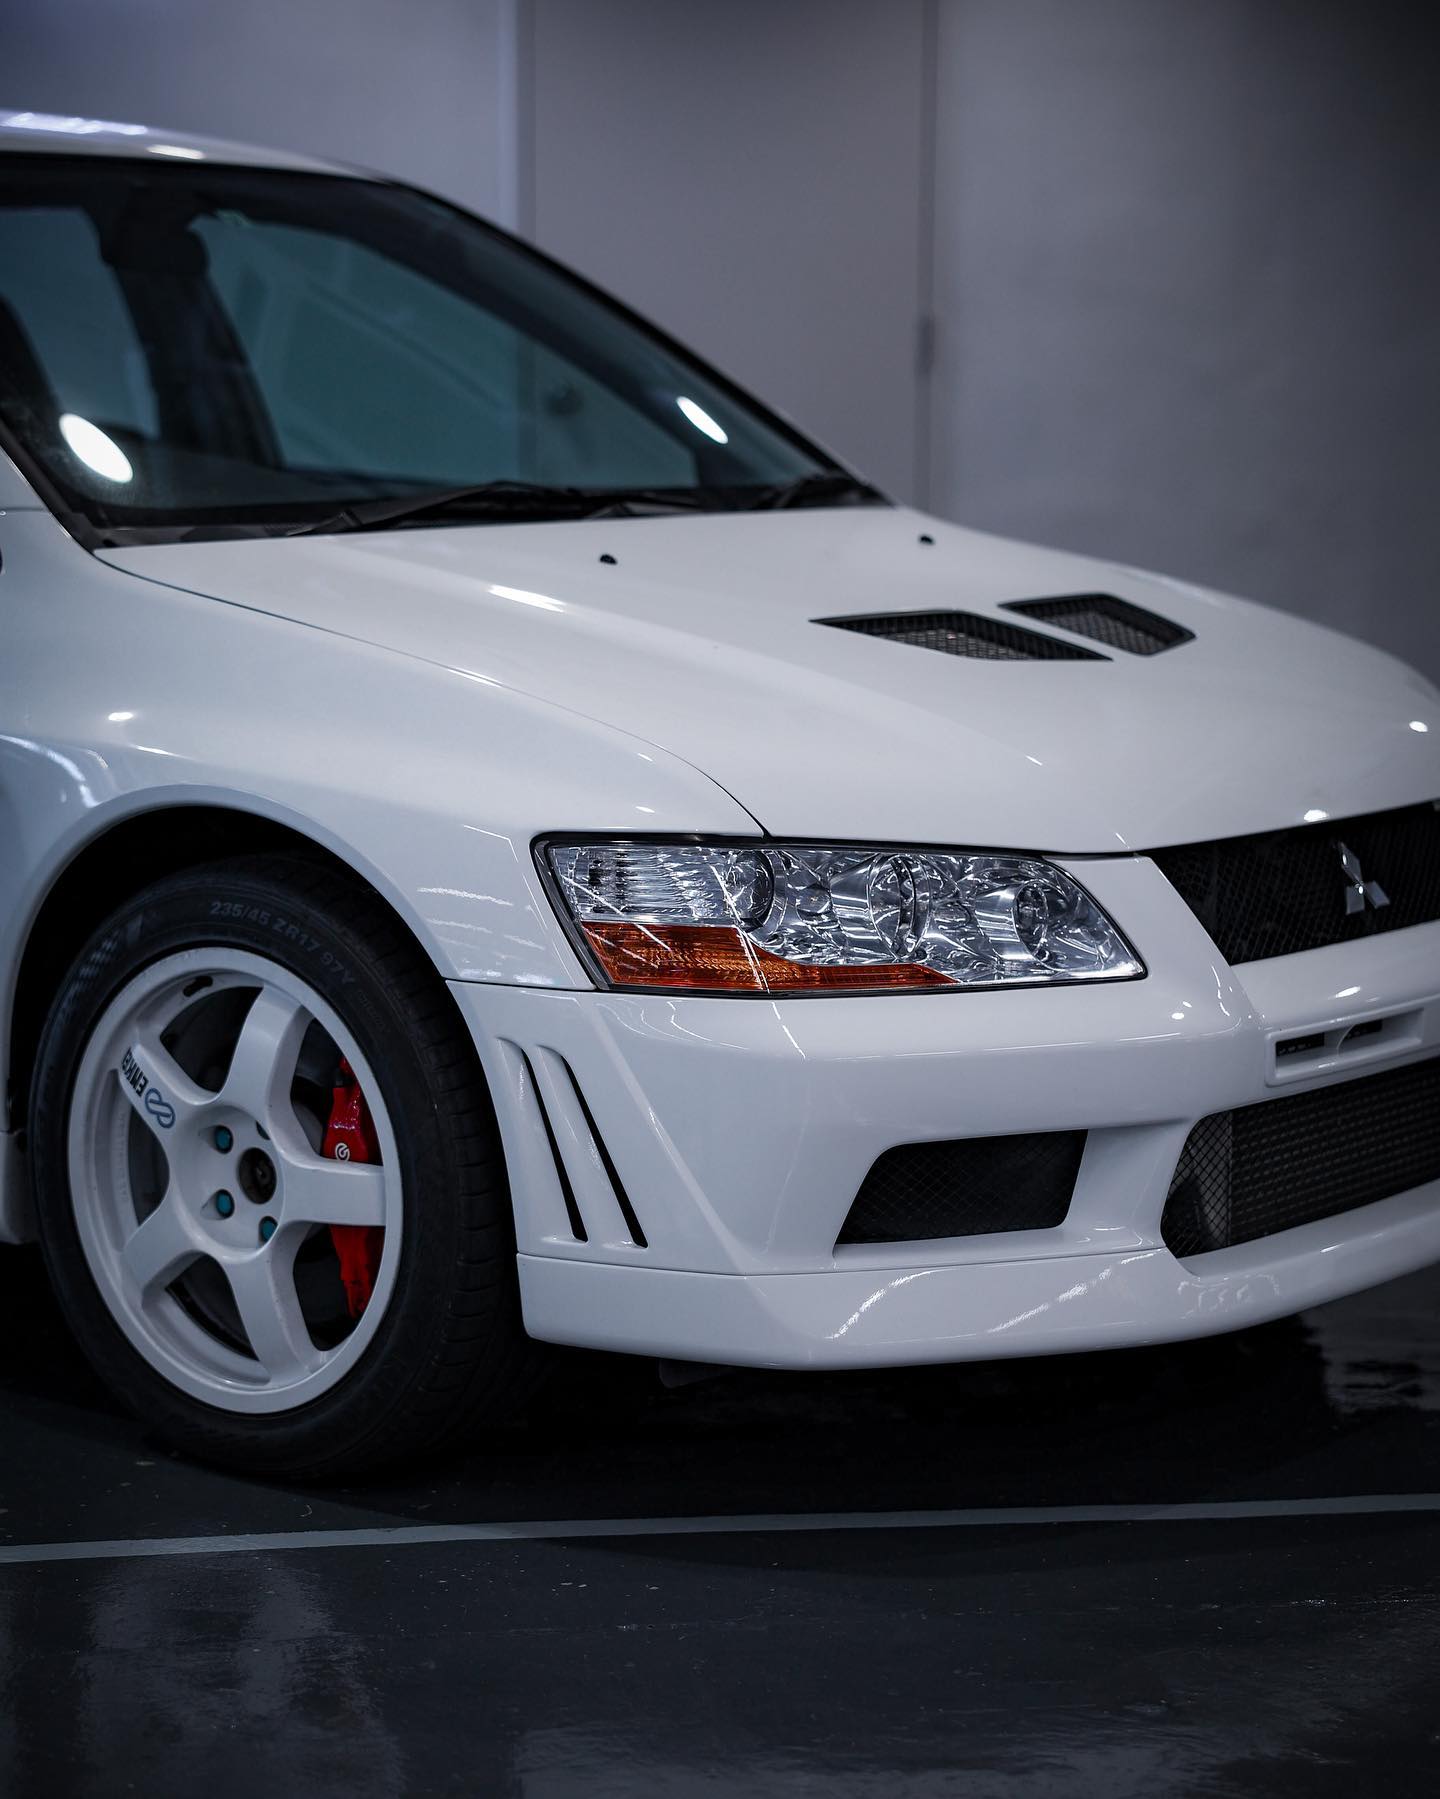 2001 Mitsubishi Evolution VIl